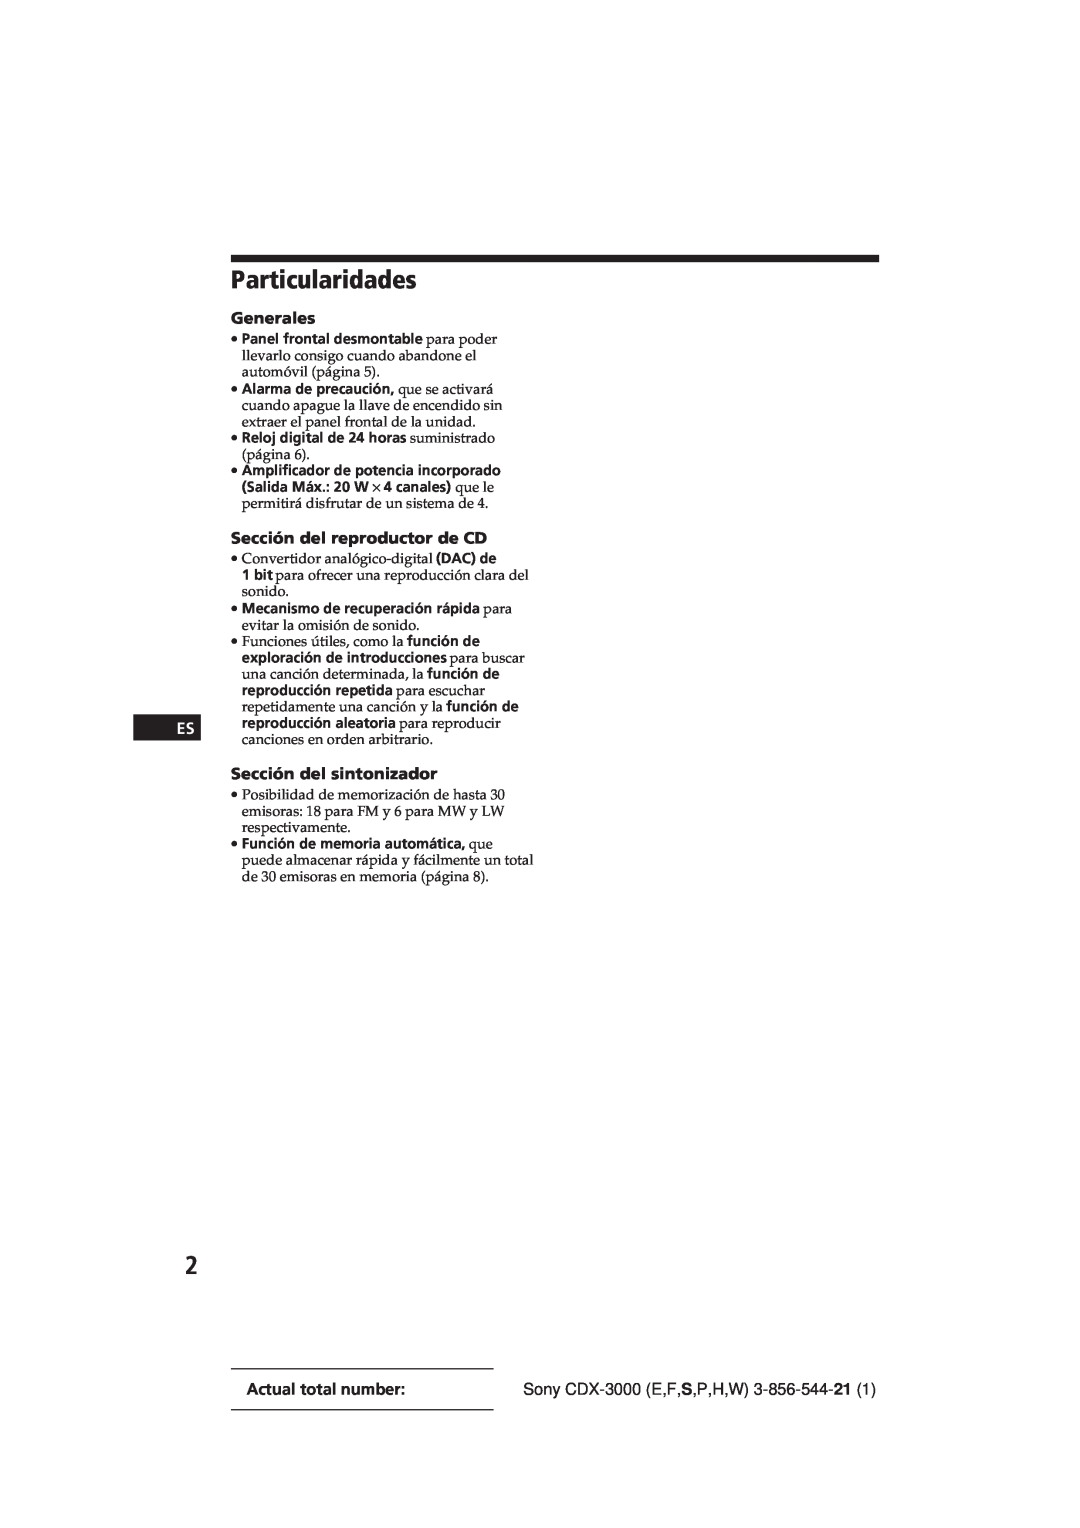 Sony CDX-3000 manual Particularidades, Generales, Sección del reproductor de CD, Sección del sintonizador 